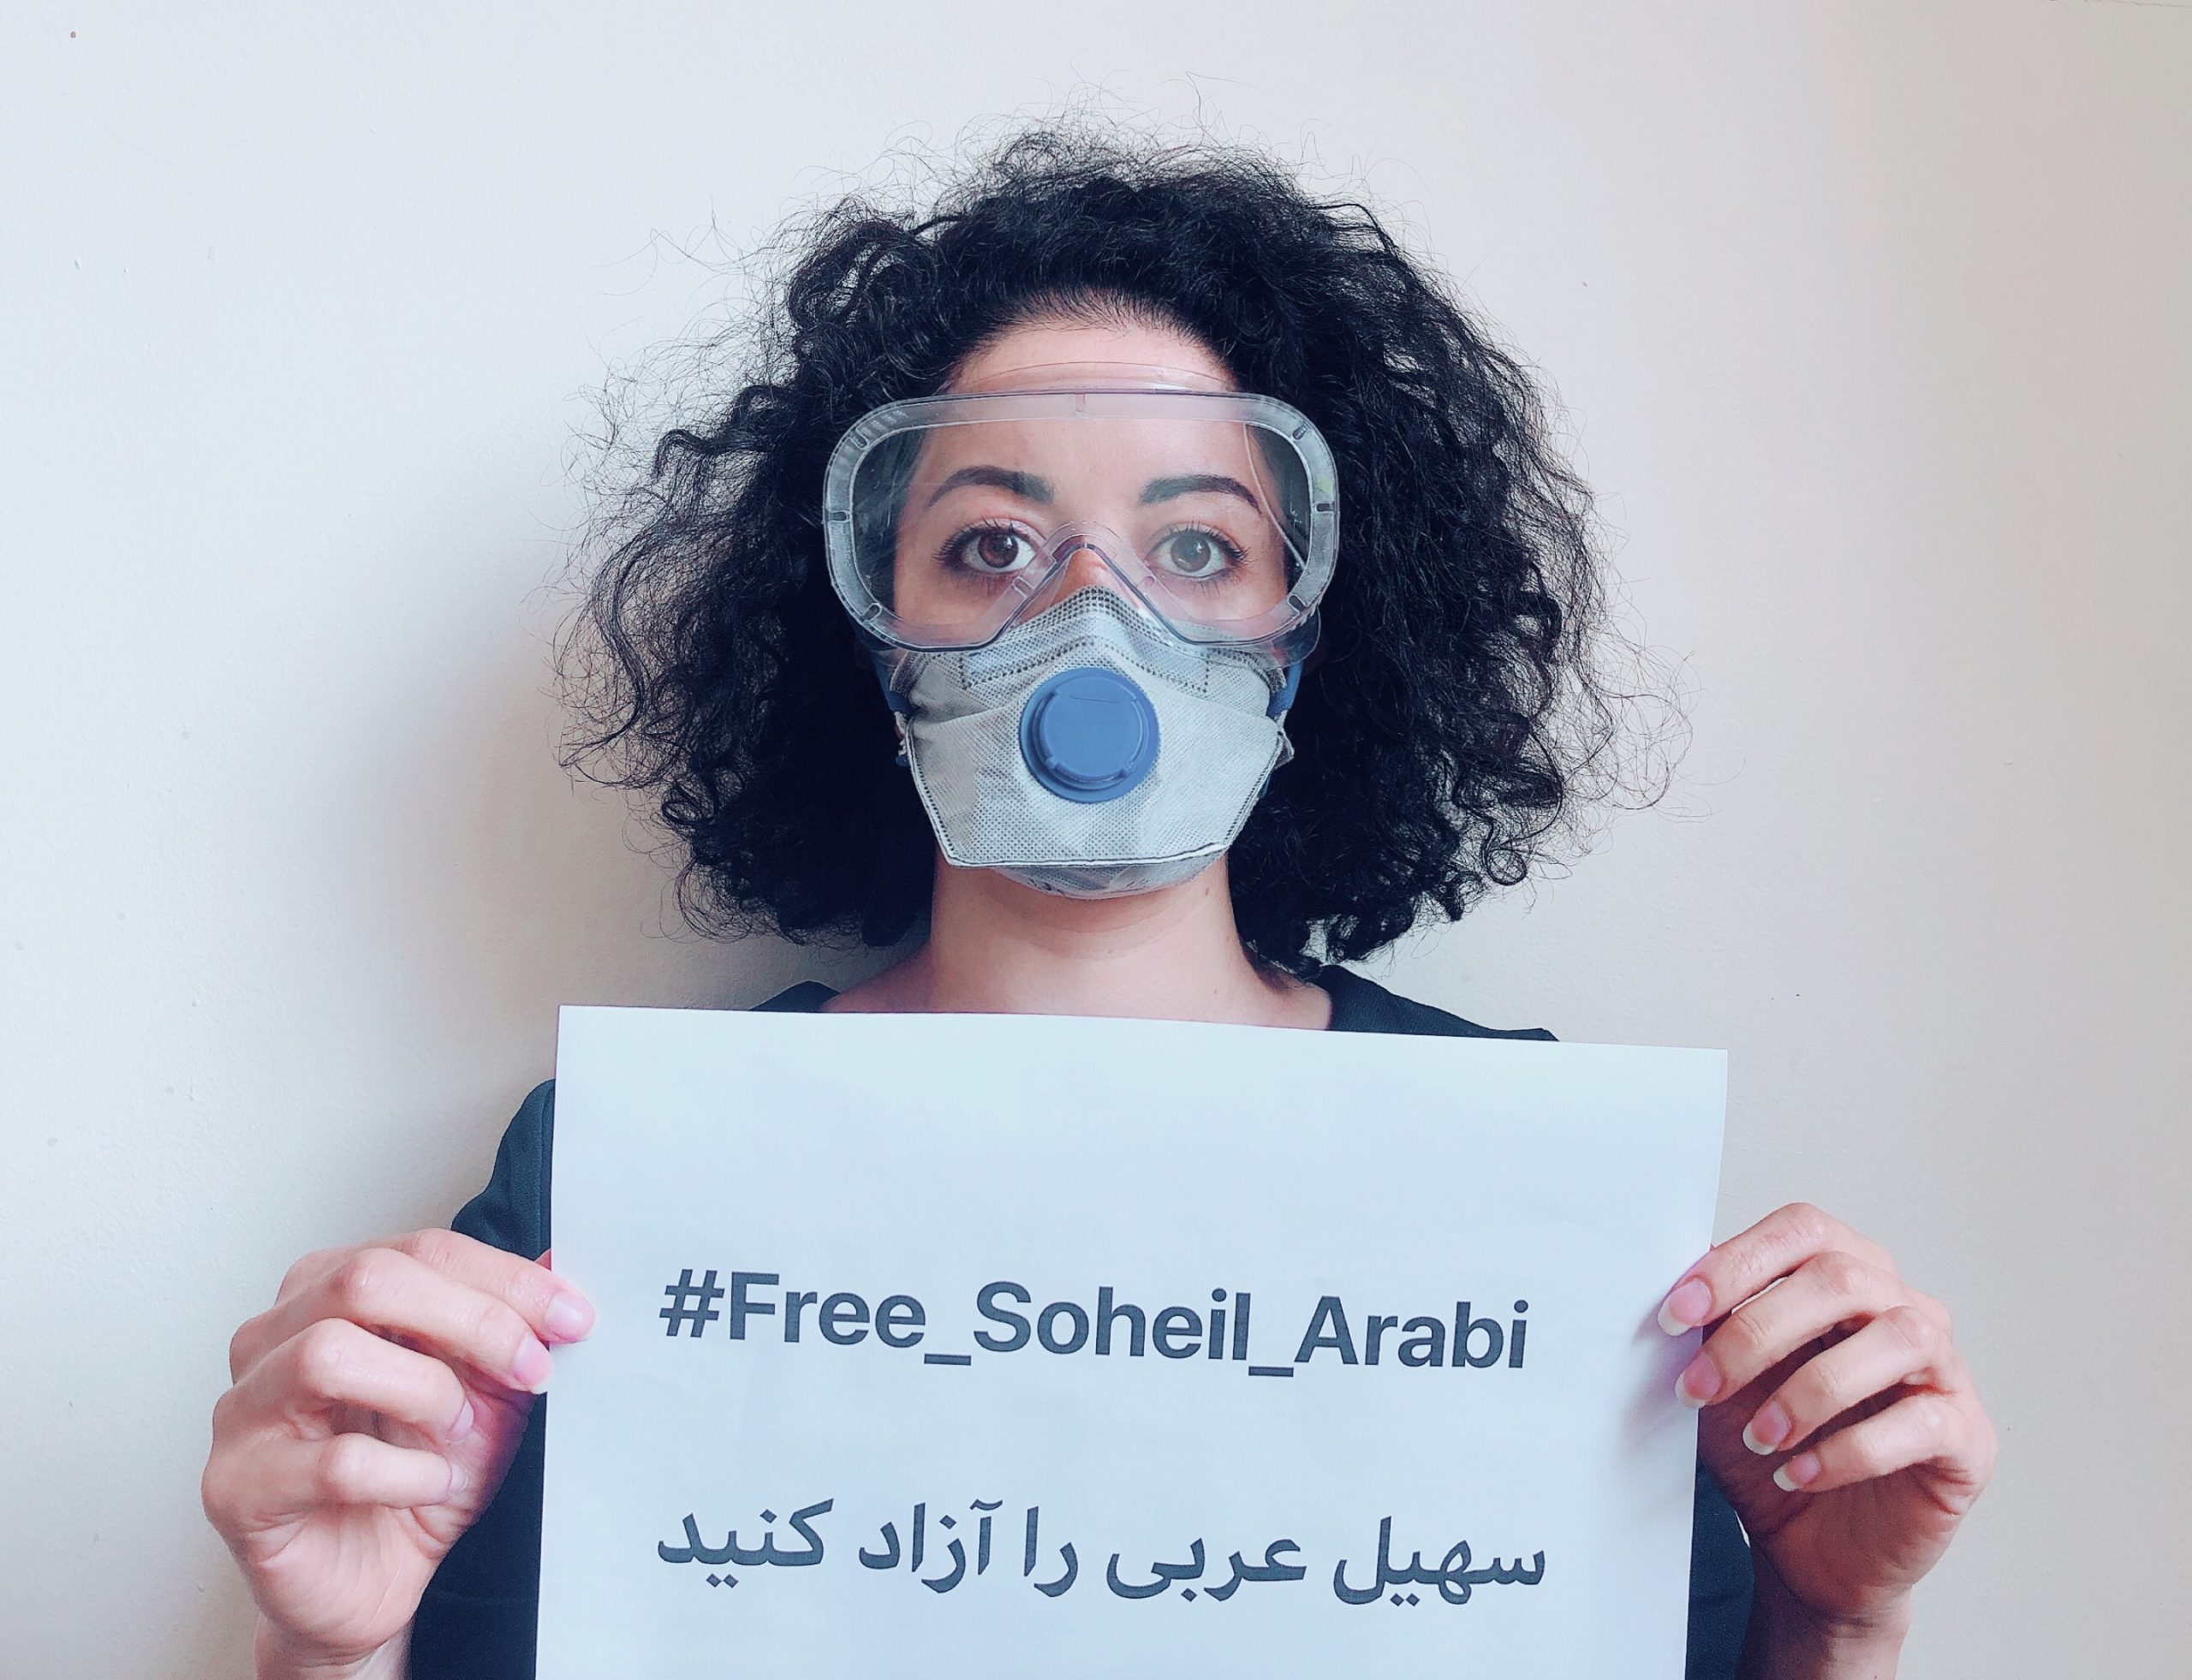 Soheil Arabi has been released!